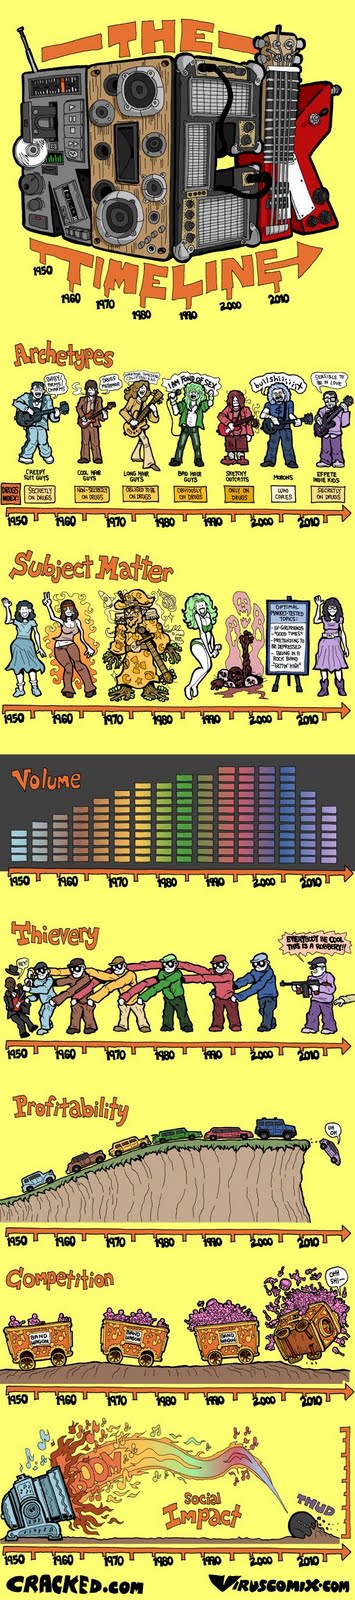 Rock Timeline image from Bobby Owsinski's Music 3.0 blog